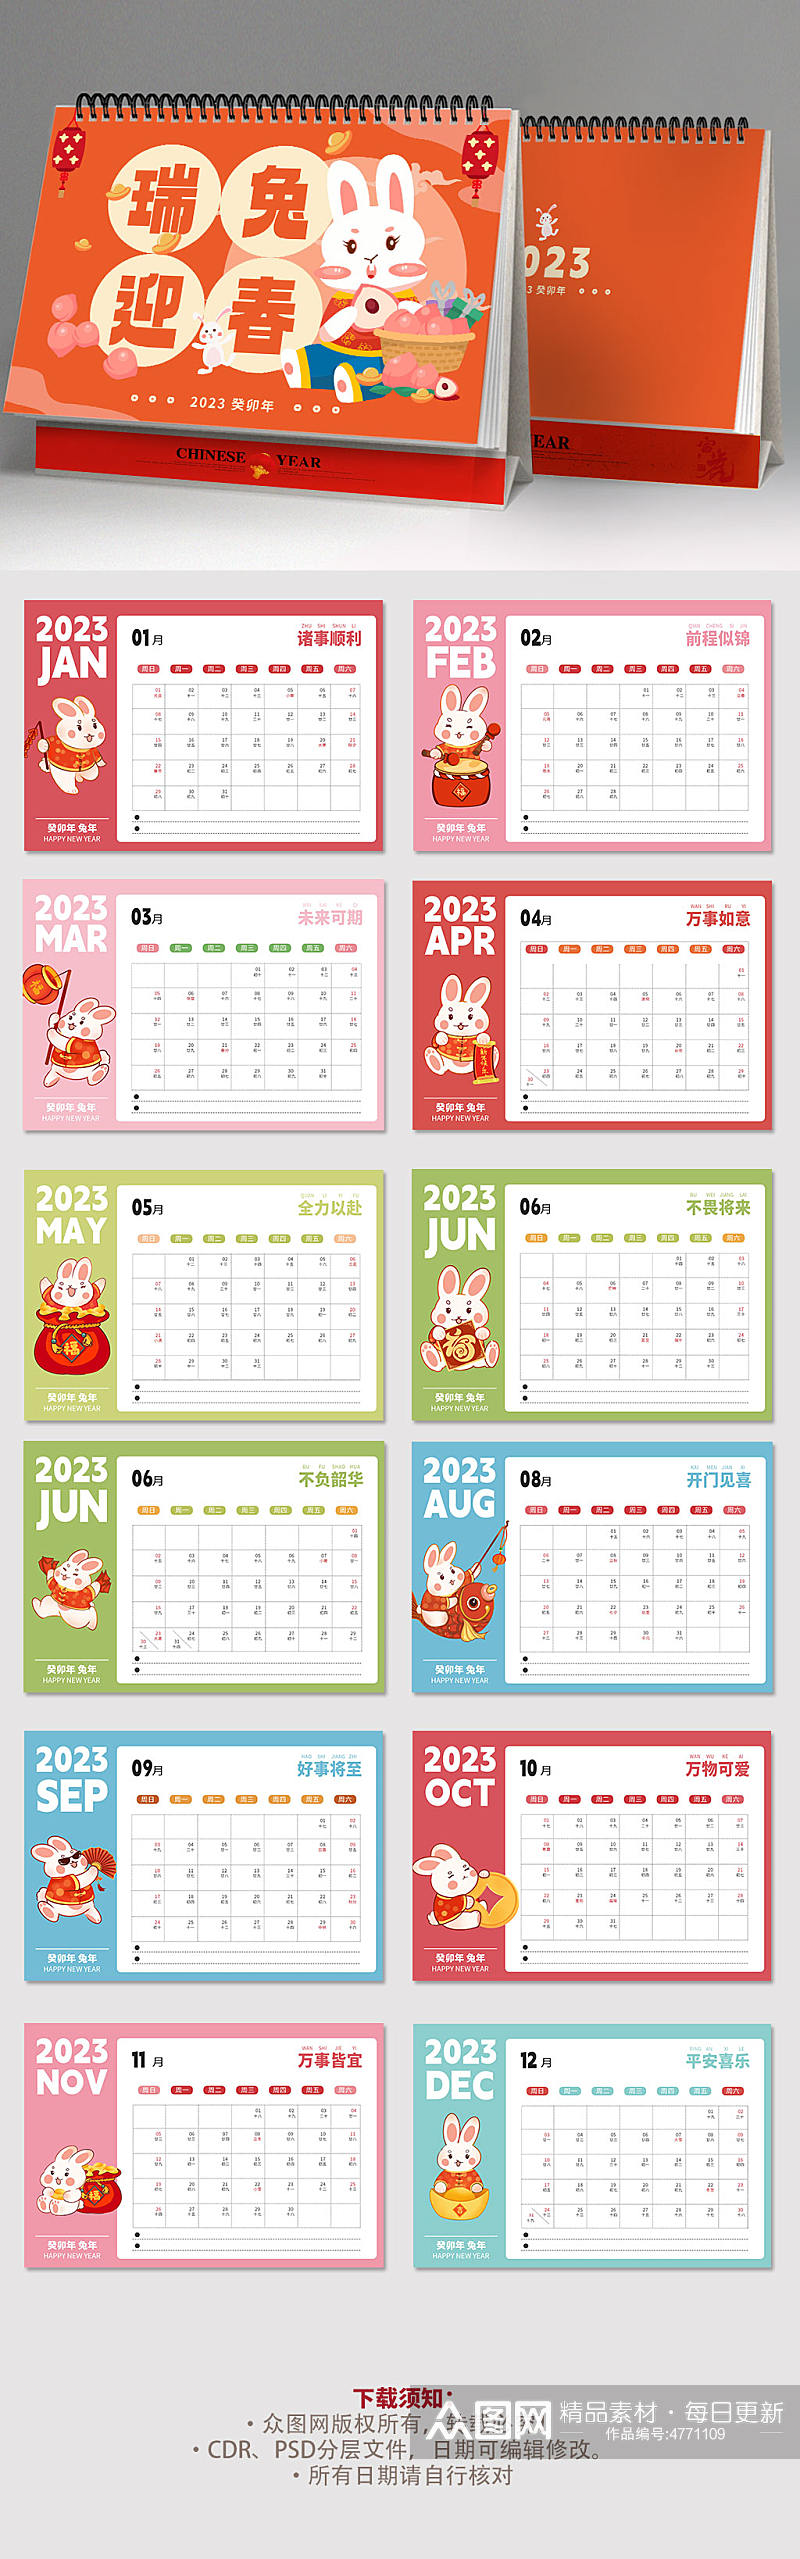 橘红色可爱2023年新年兔年台历日历设计素材